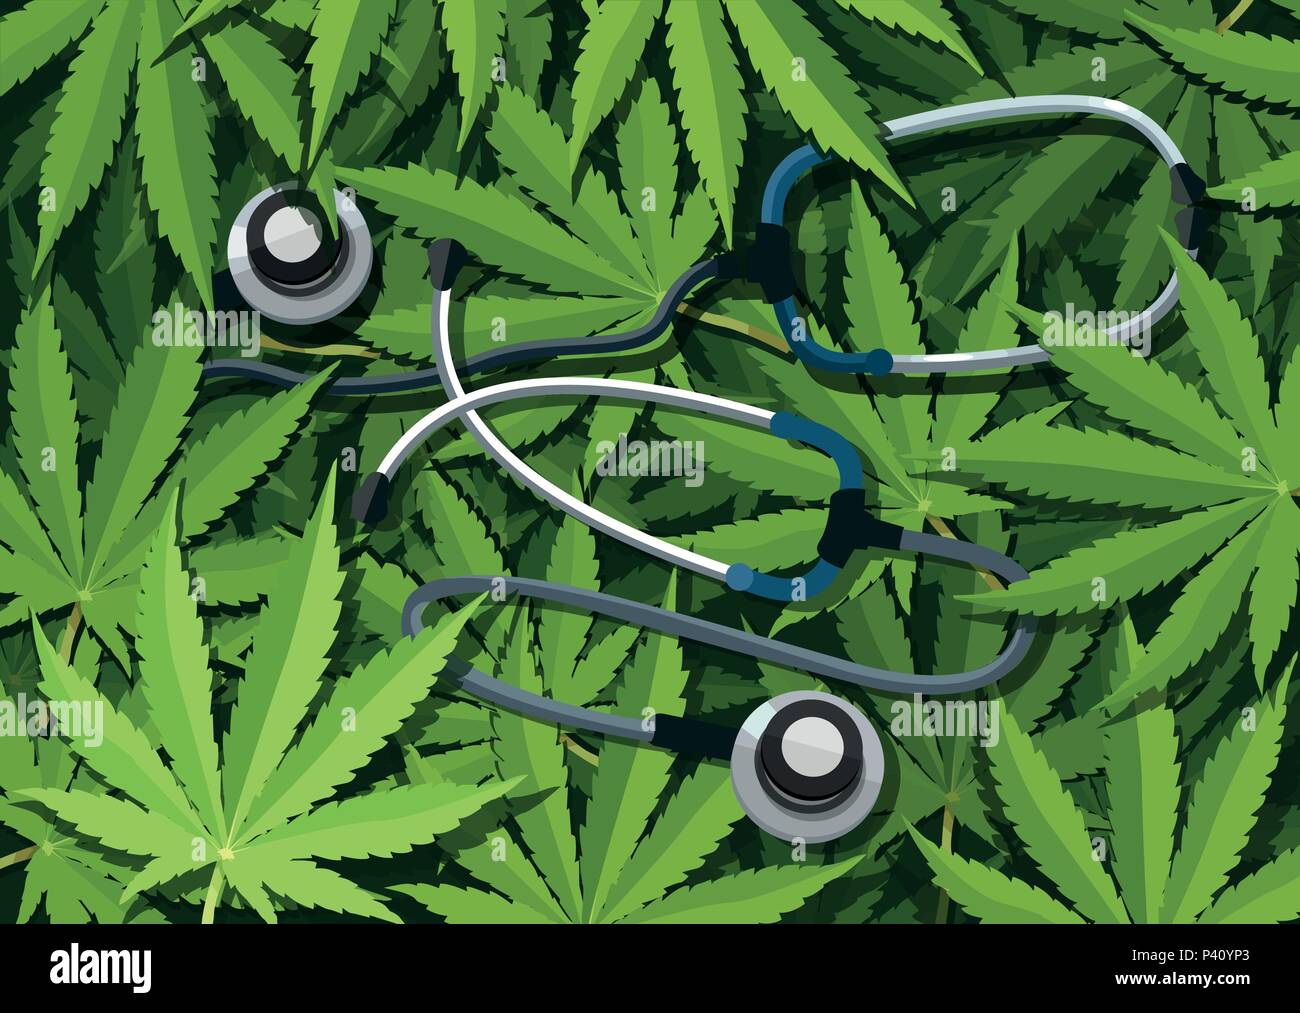 L'usage médical de la marijuana et de concept de soins de santé. La médecine traditionnelle par rapport à d'autres options avec le cannabis Illustration de Vecteur